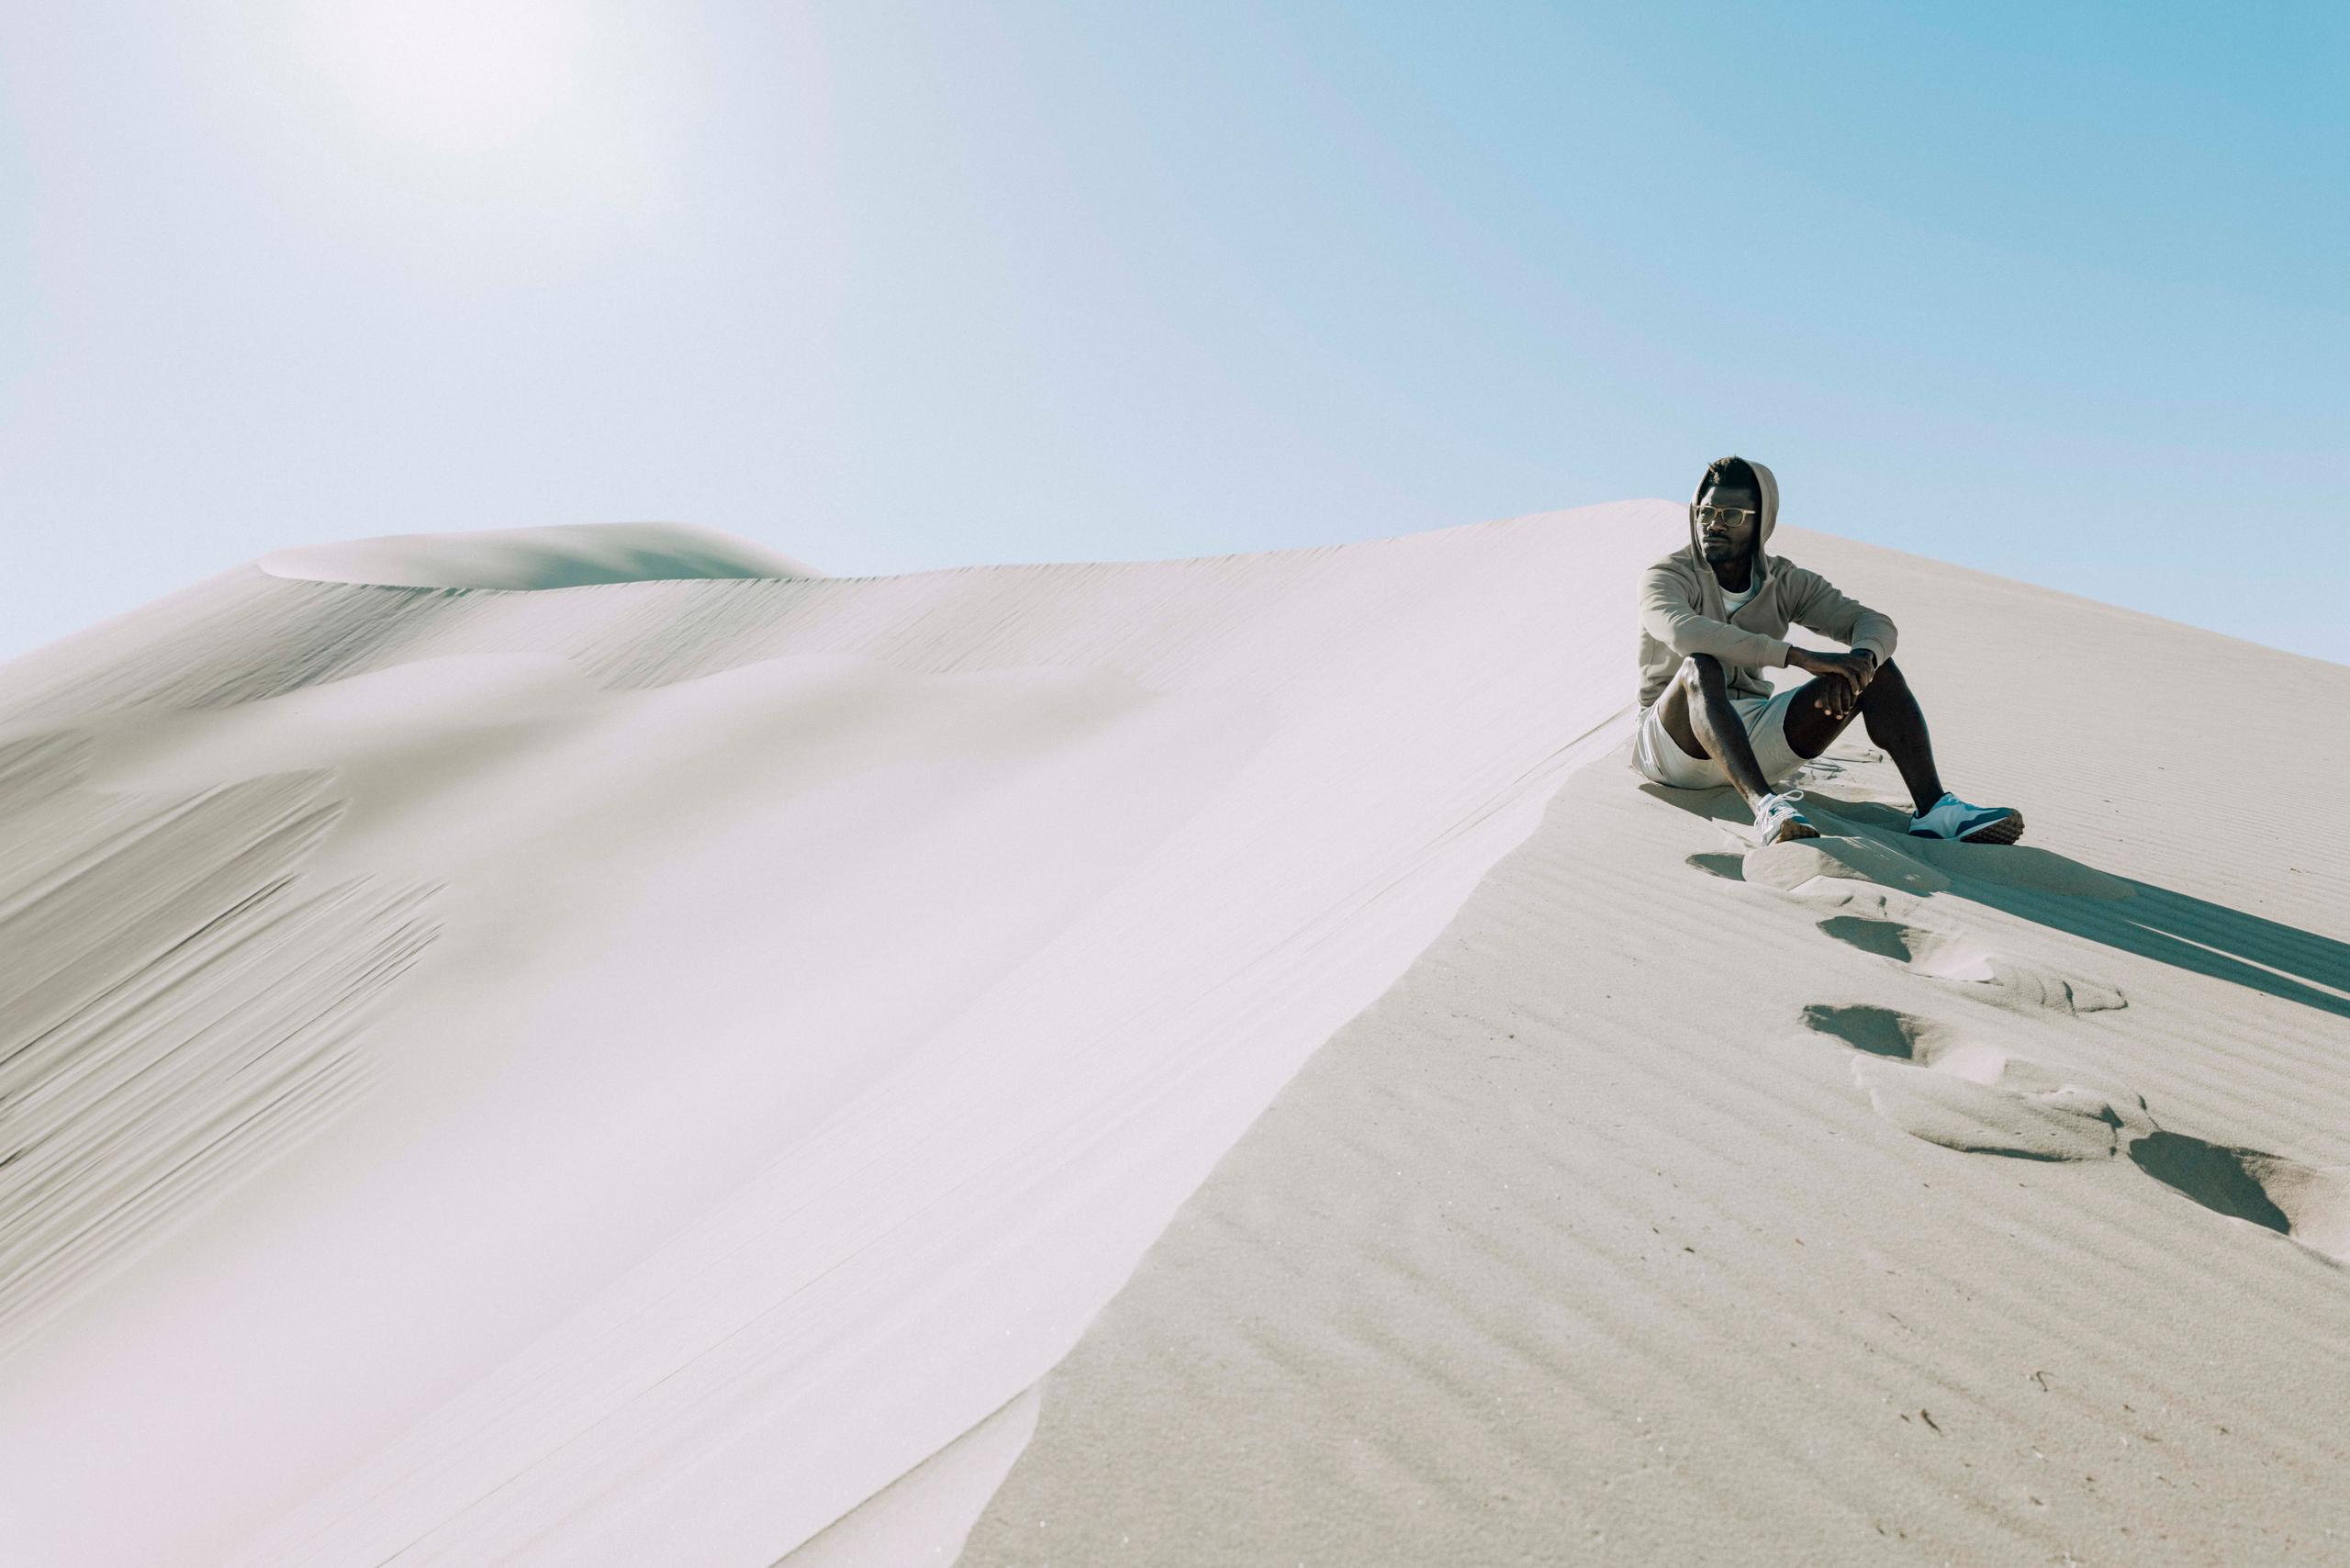 Man wearing Yosemite sunglasses sitting on desert sand dune